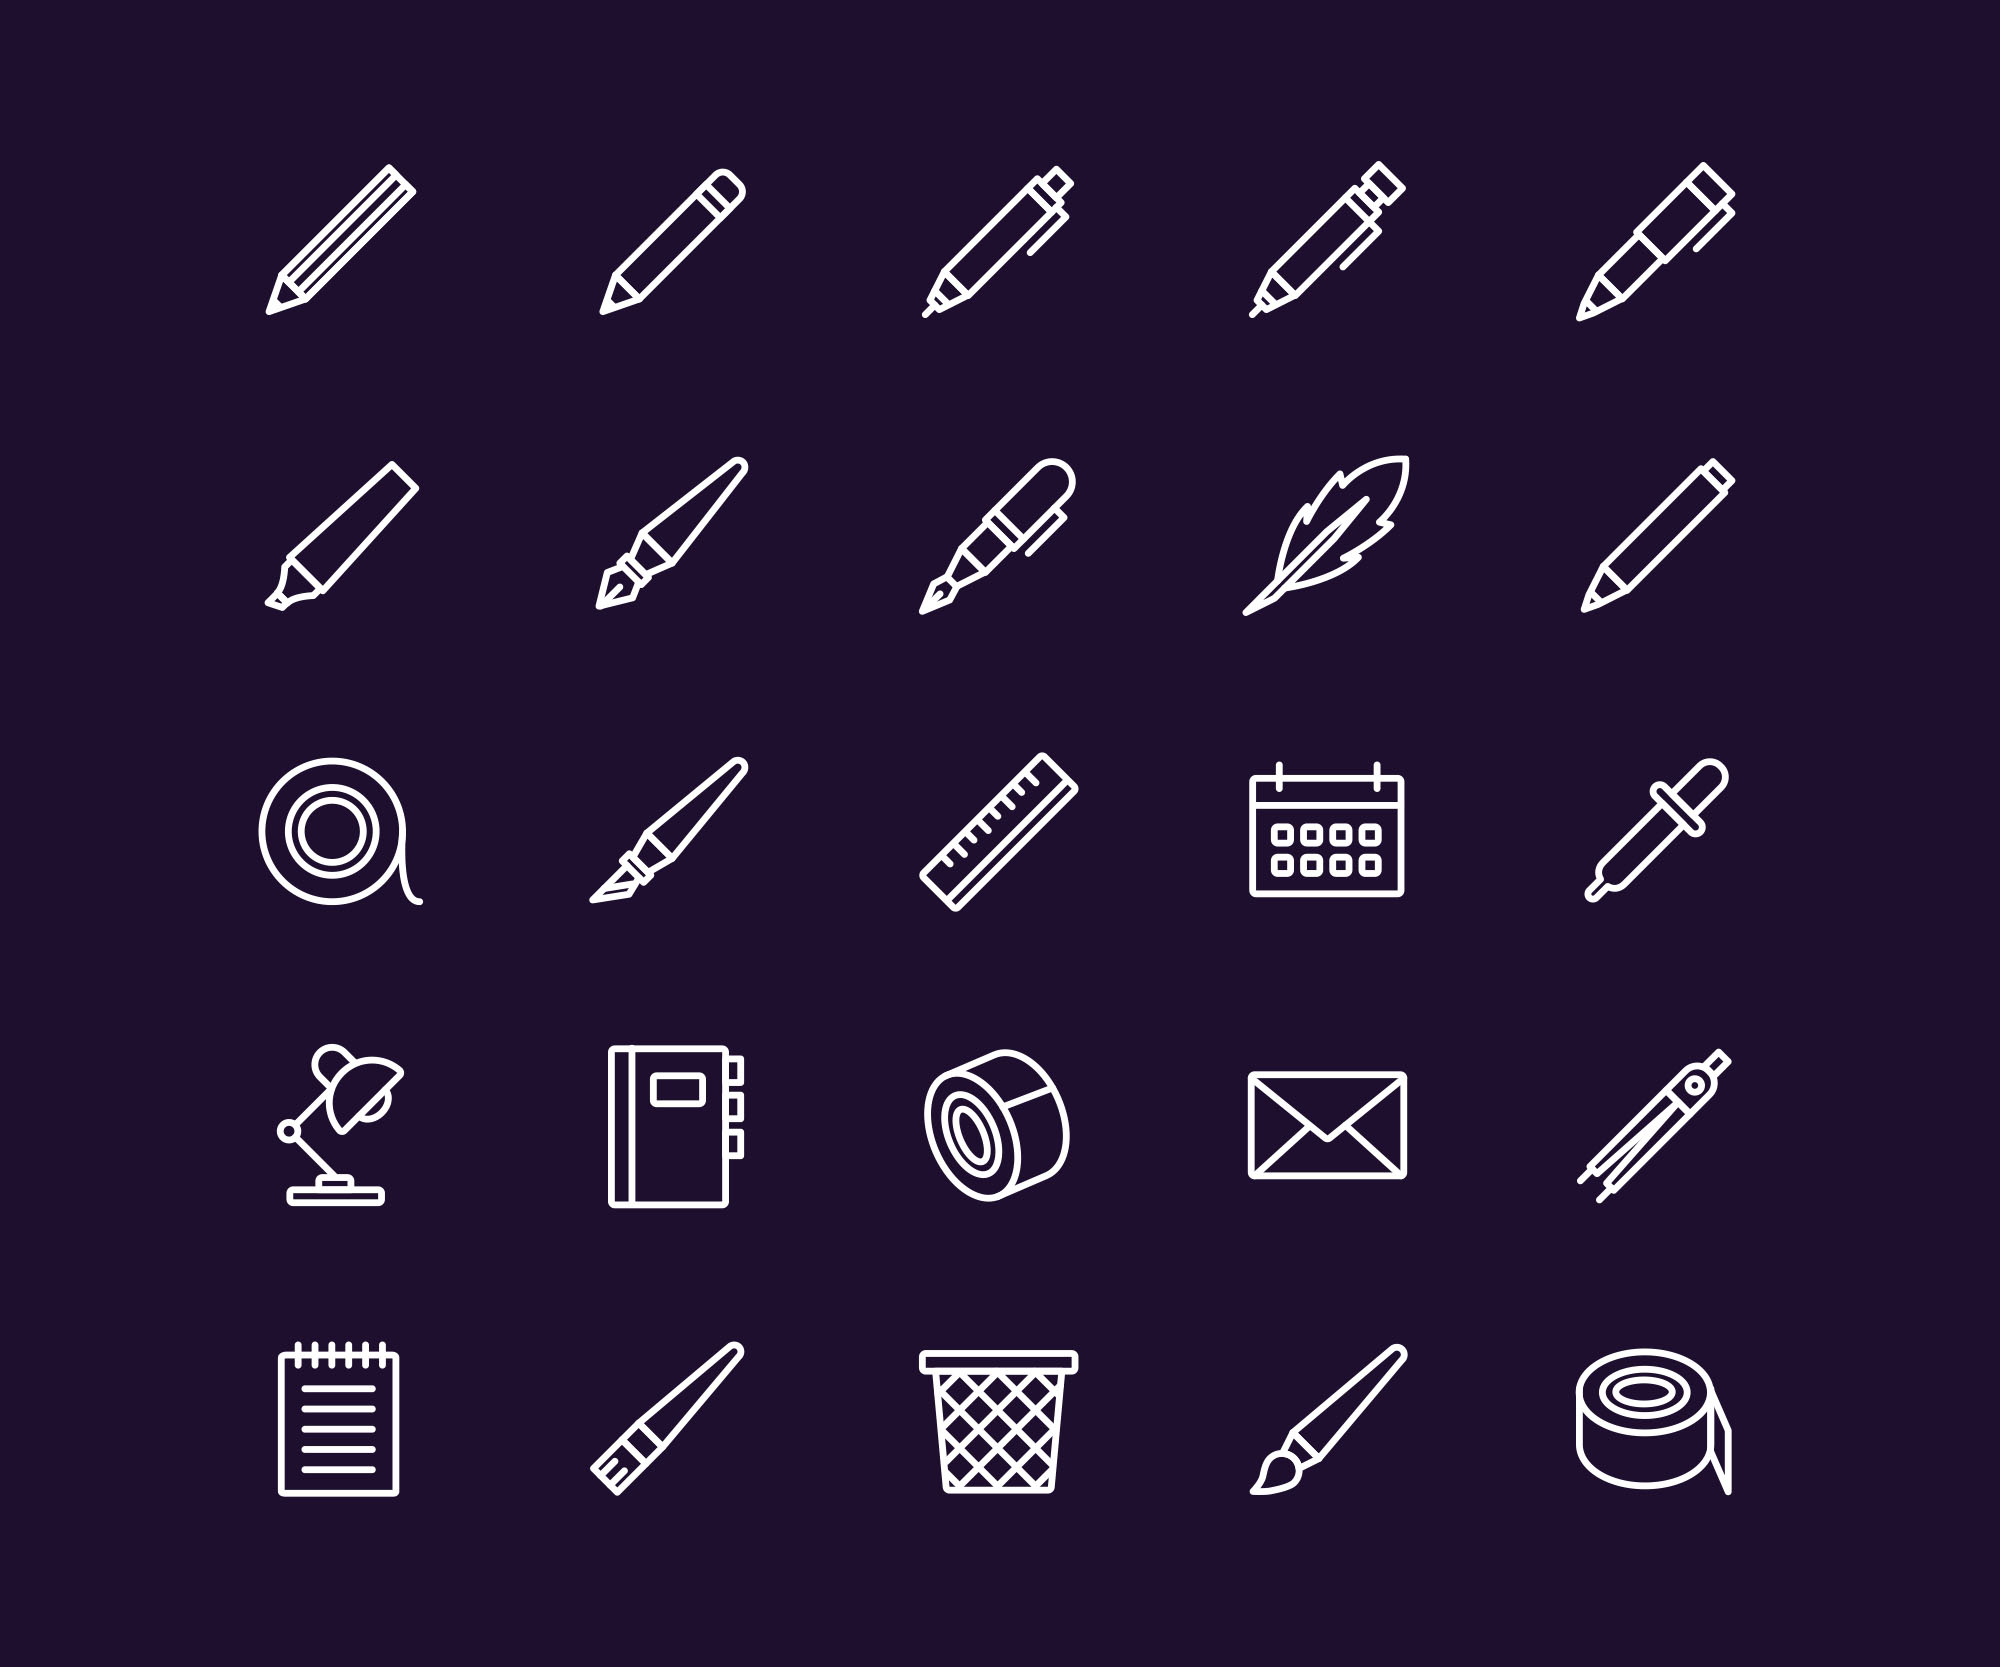 办公用品矢量图标素材 Stationery Icons Set插图(1)